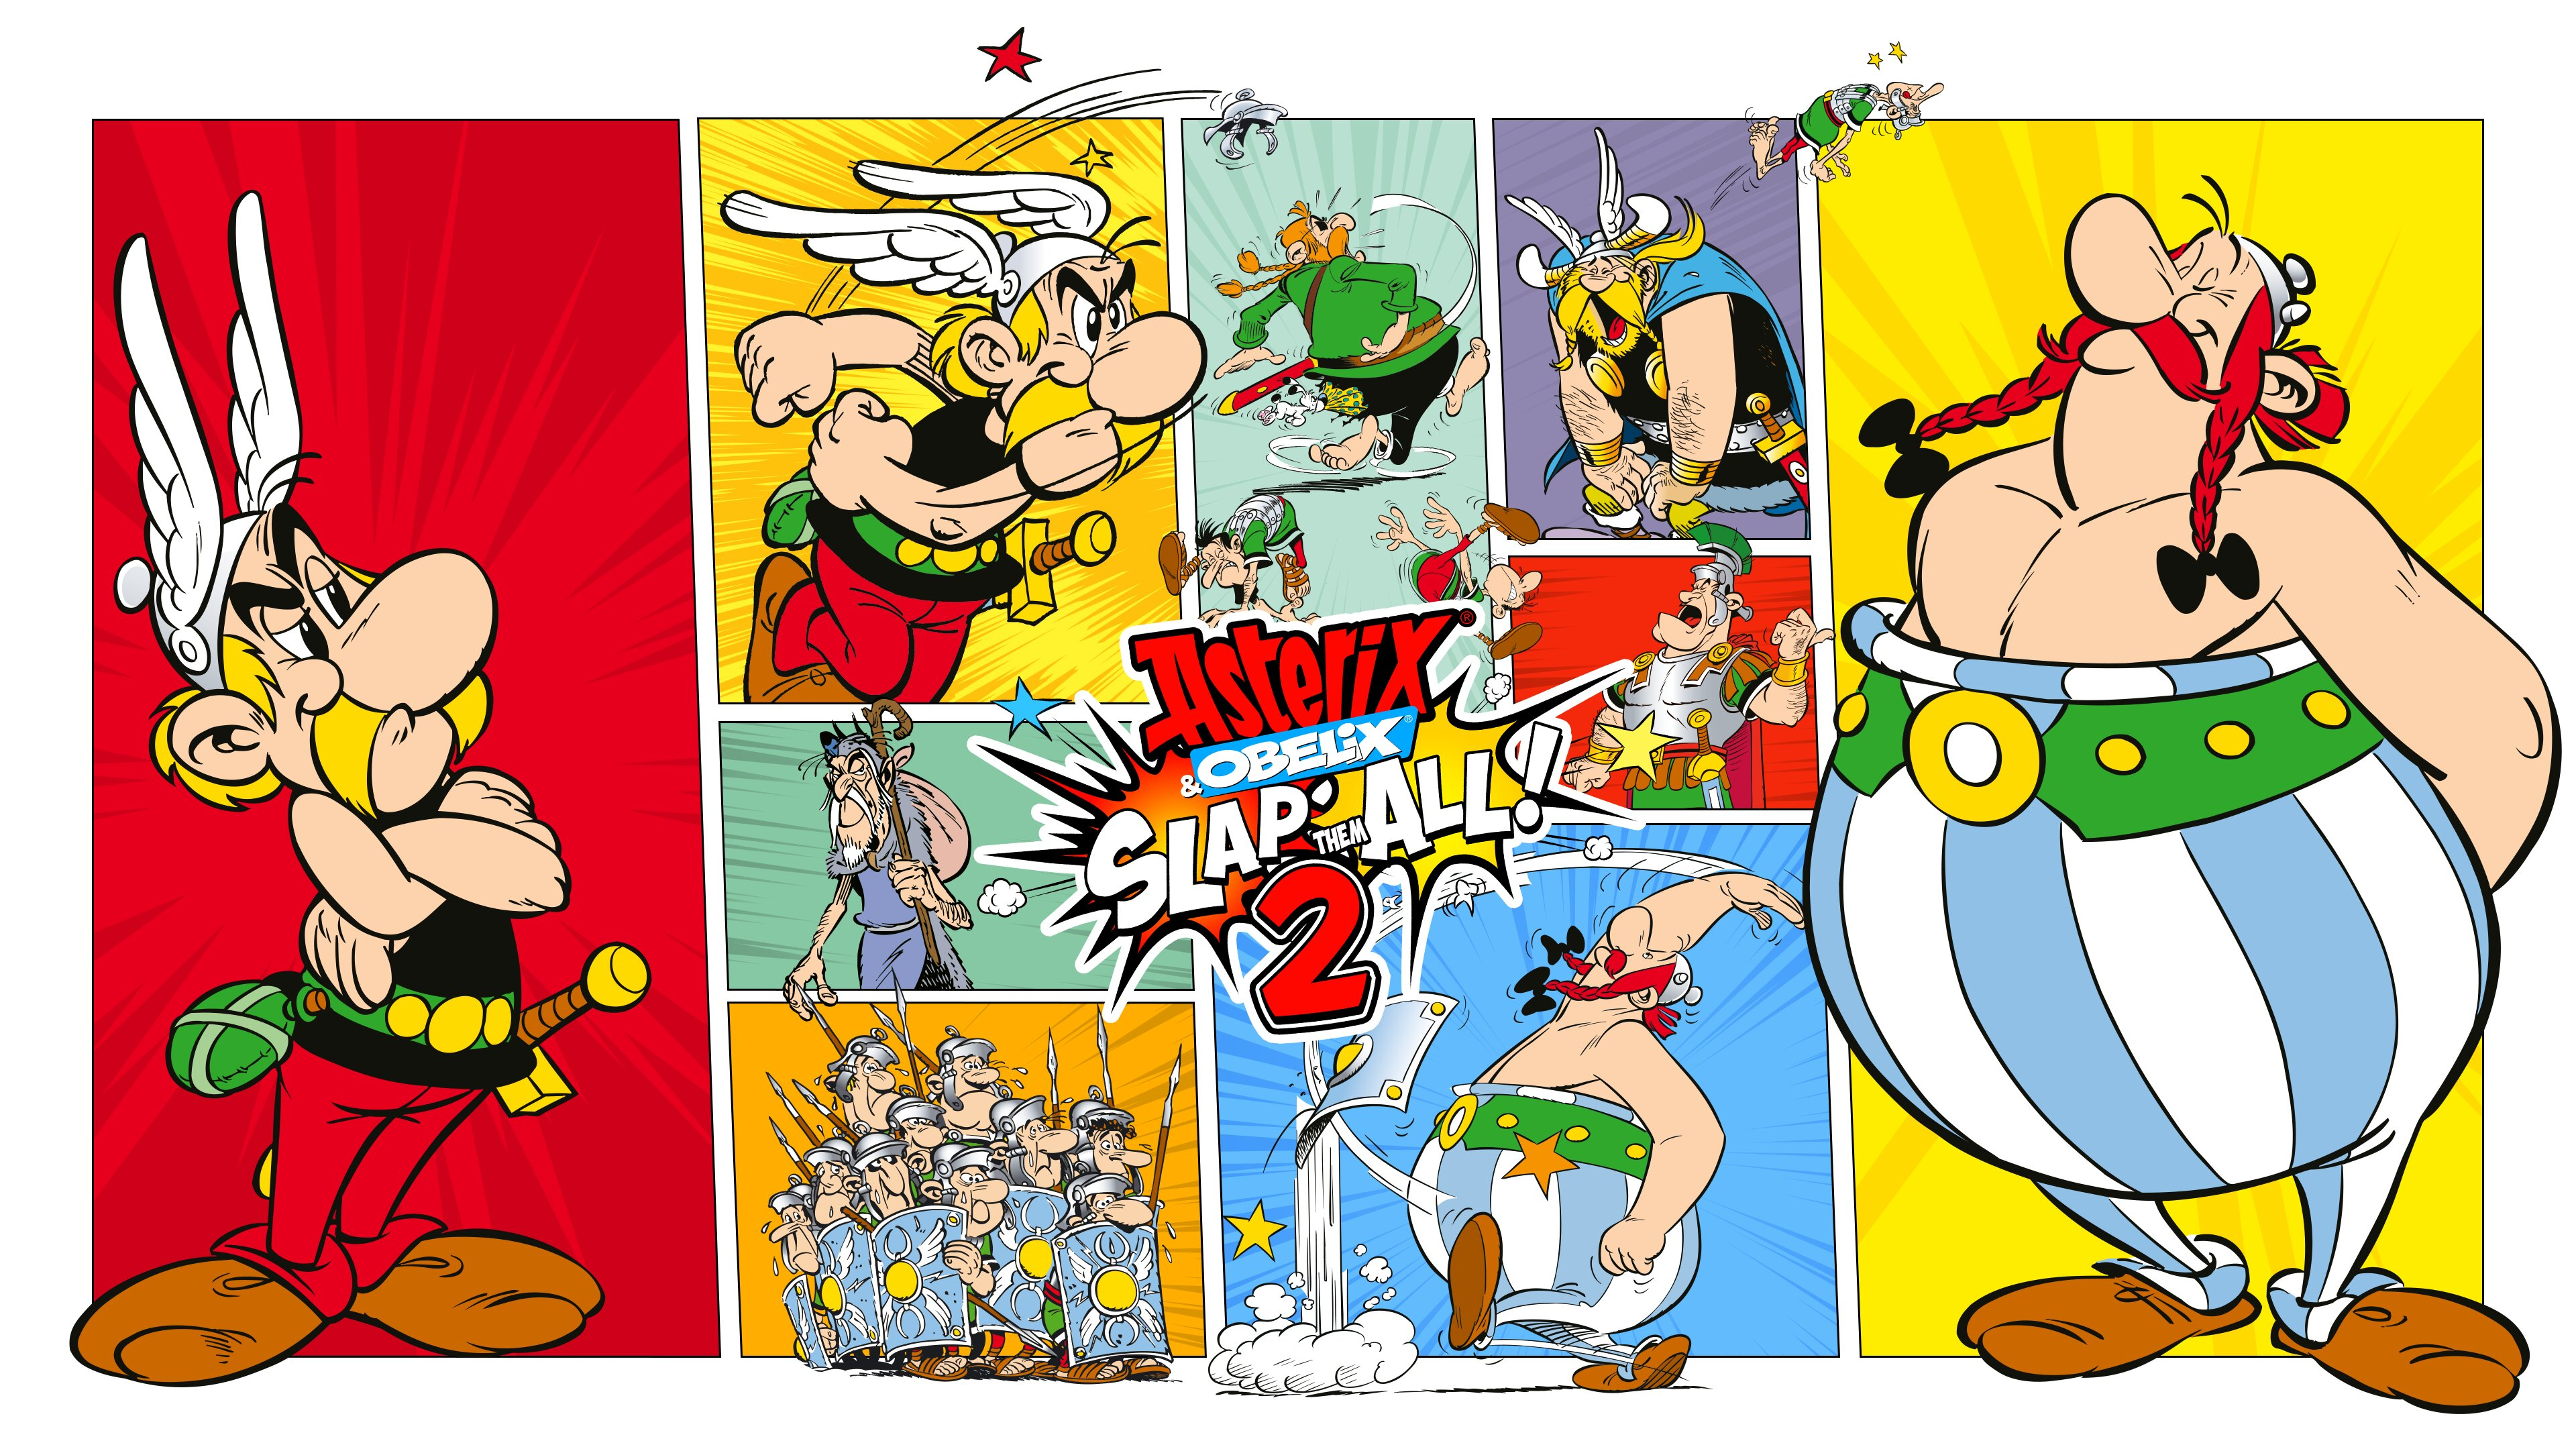 Релизный трейлер Asterix & Obelix Slap Them All! 2